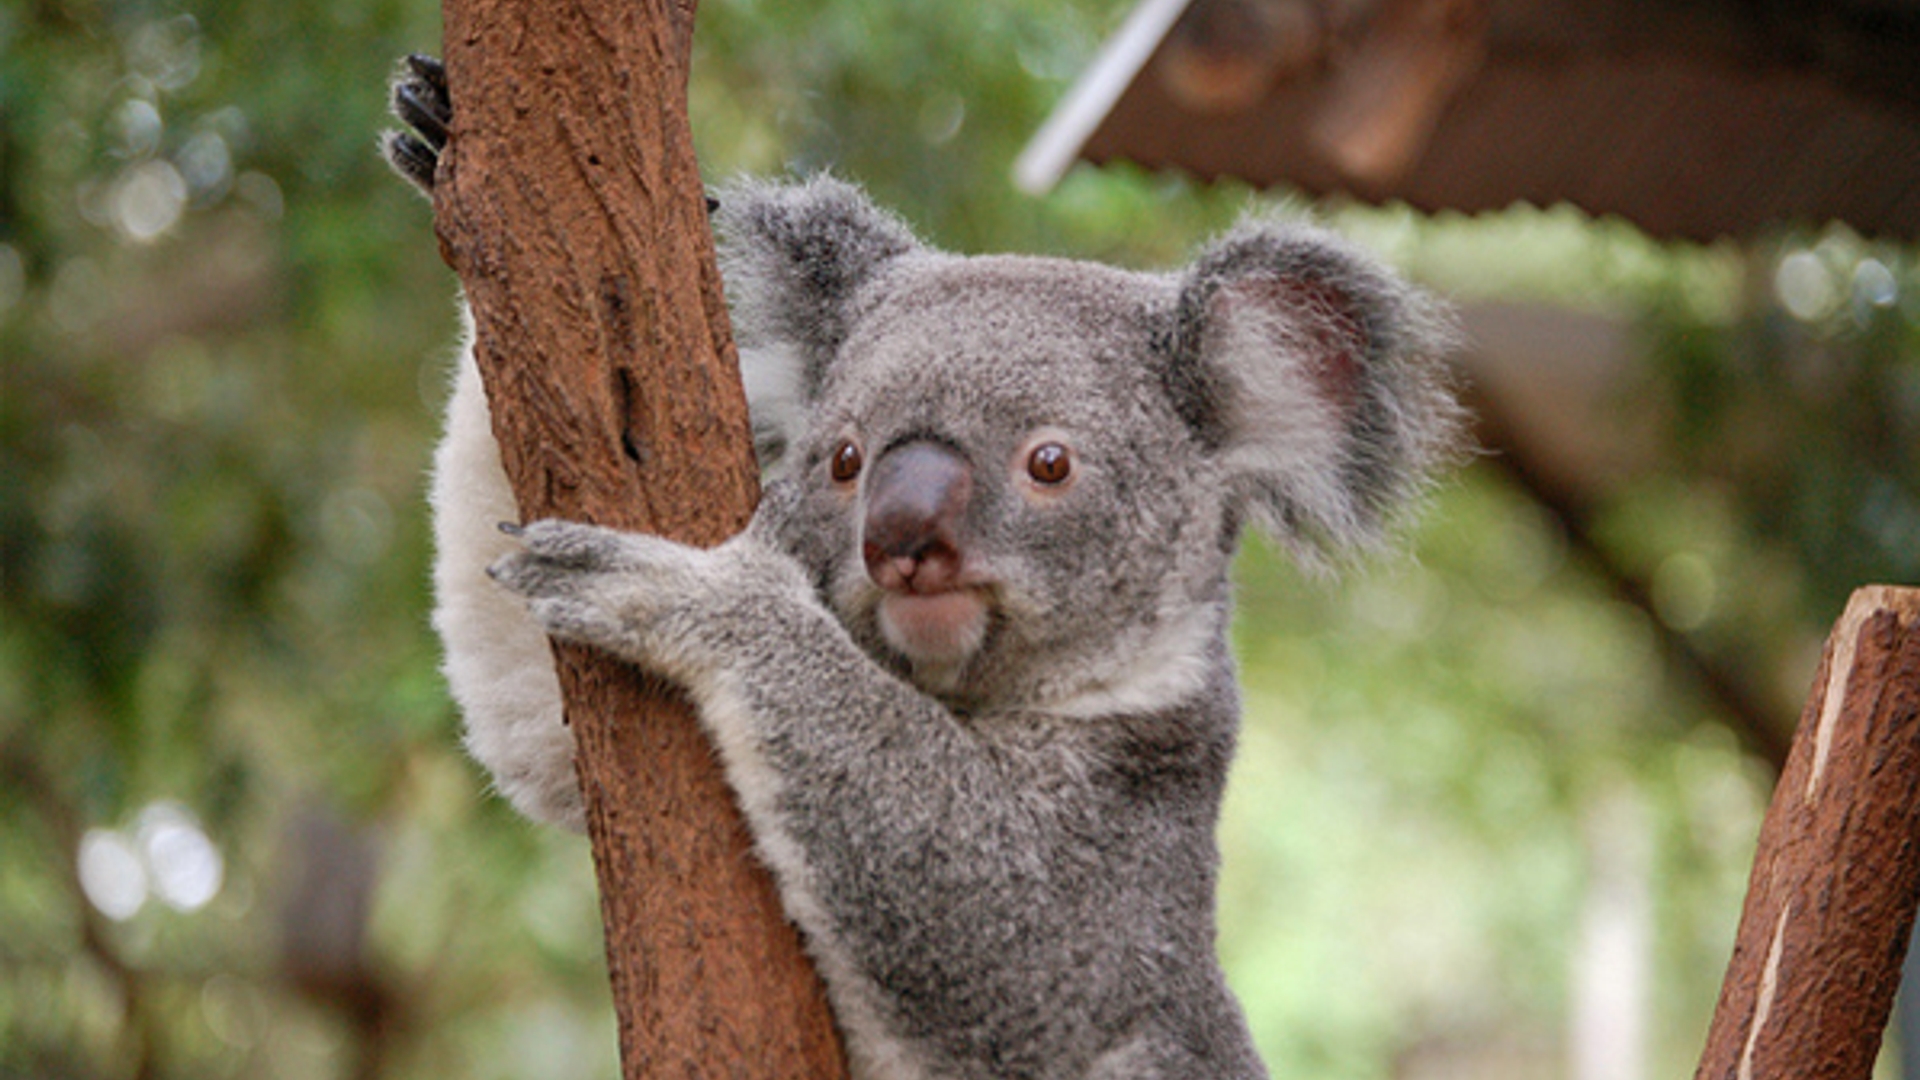 Koala_Ted-Lester-Flickr_01.jpg